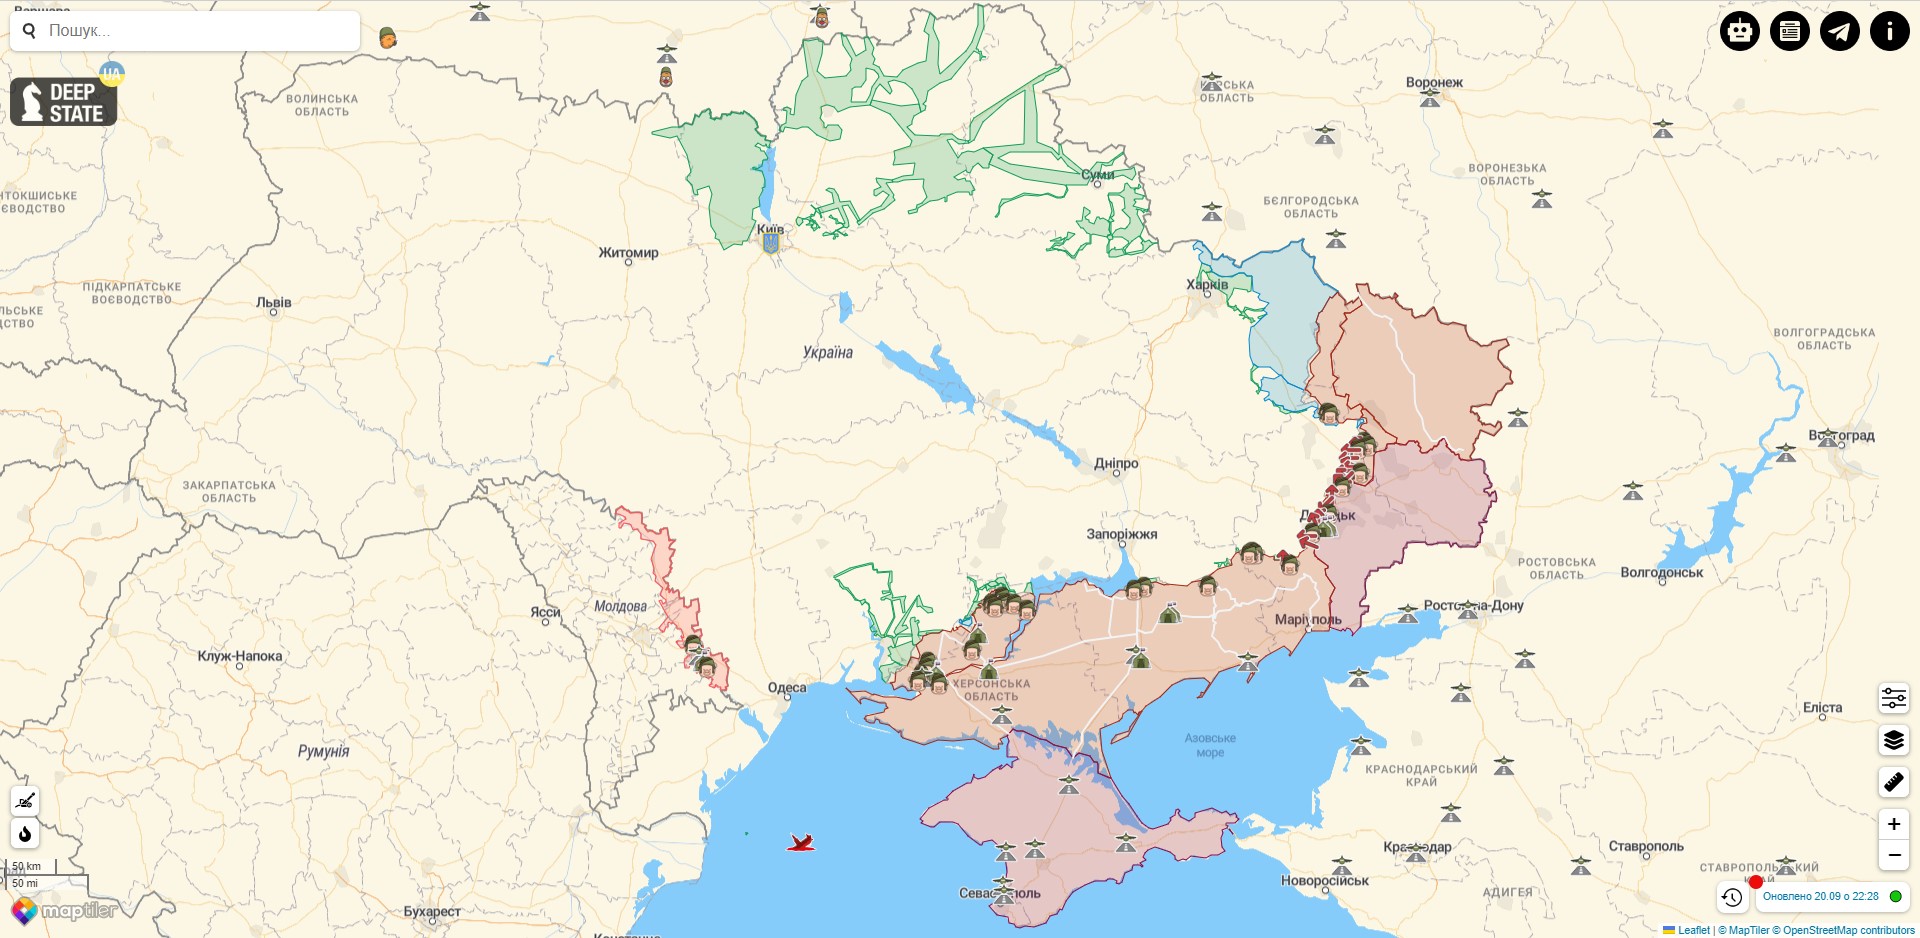 Боевые действия в Украине против РФ на 20 сентября